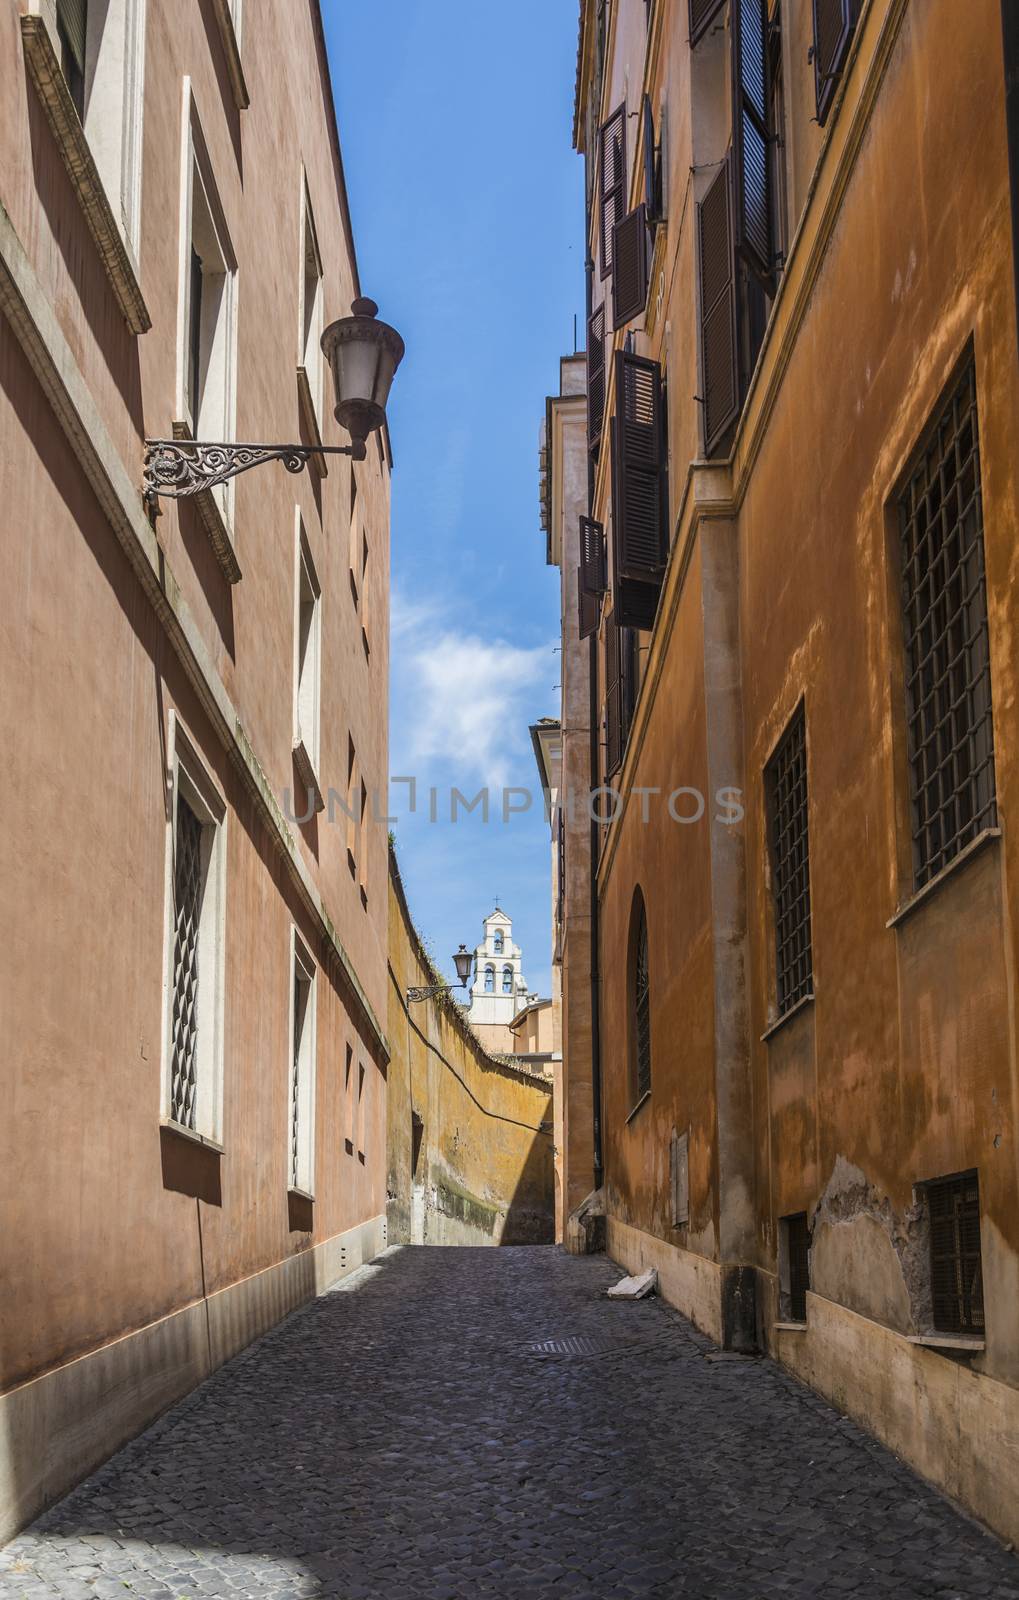 Scenic street in Rome by rarrarorro